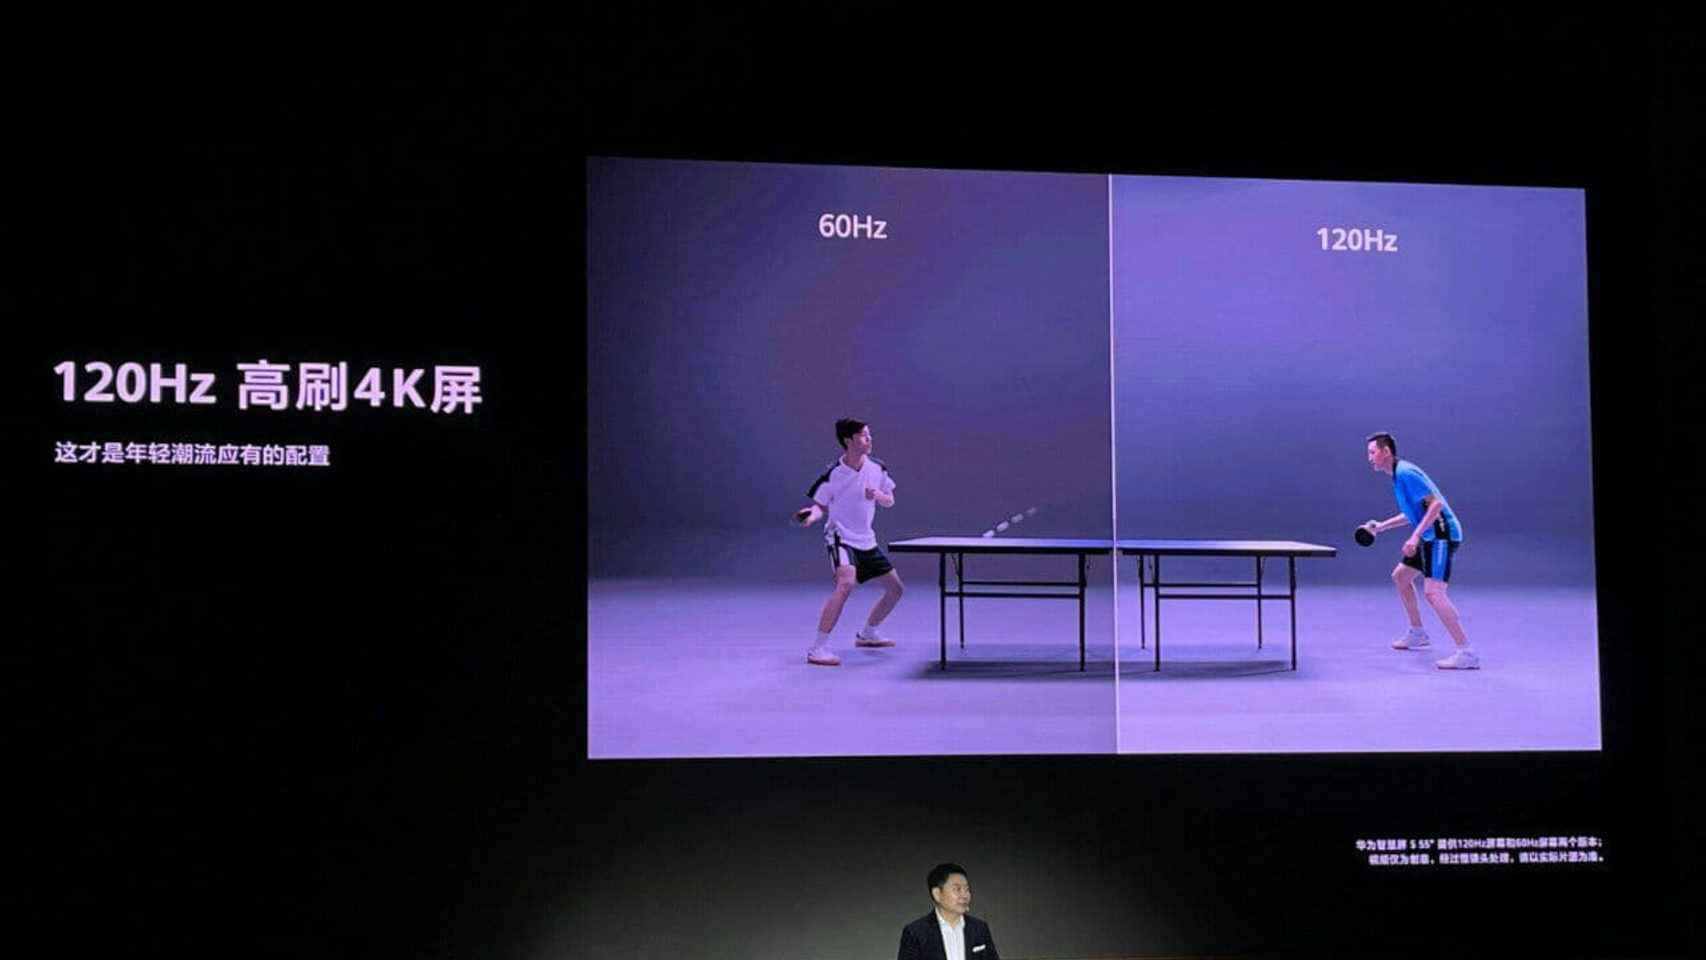 Los nuevos televisores de Huawei apuestan por los 120 Hz